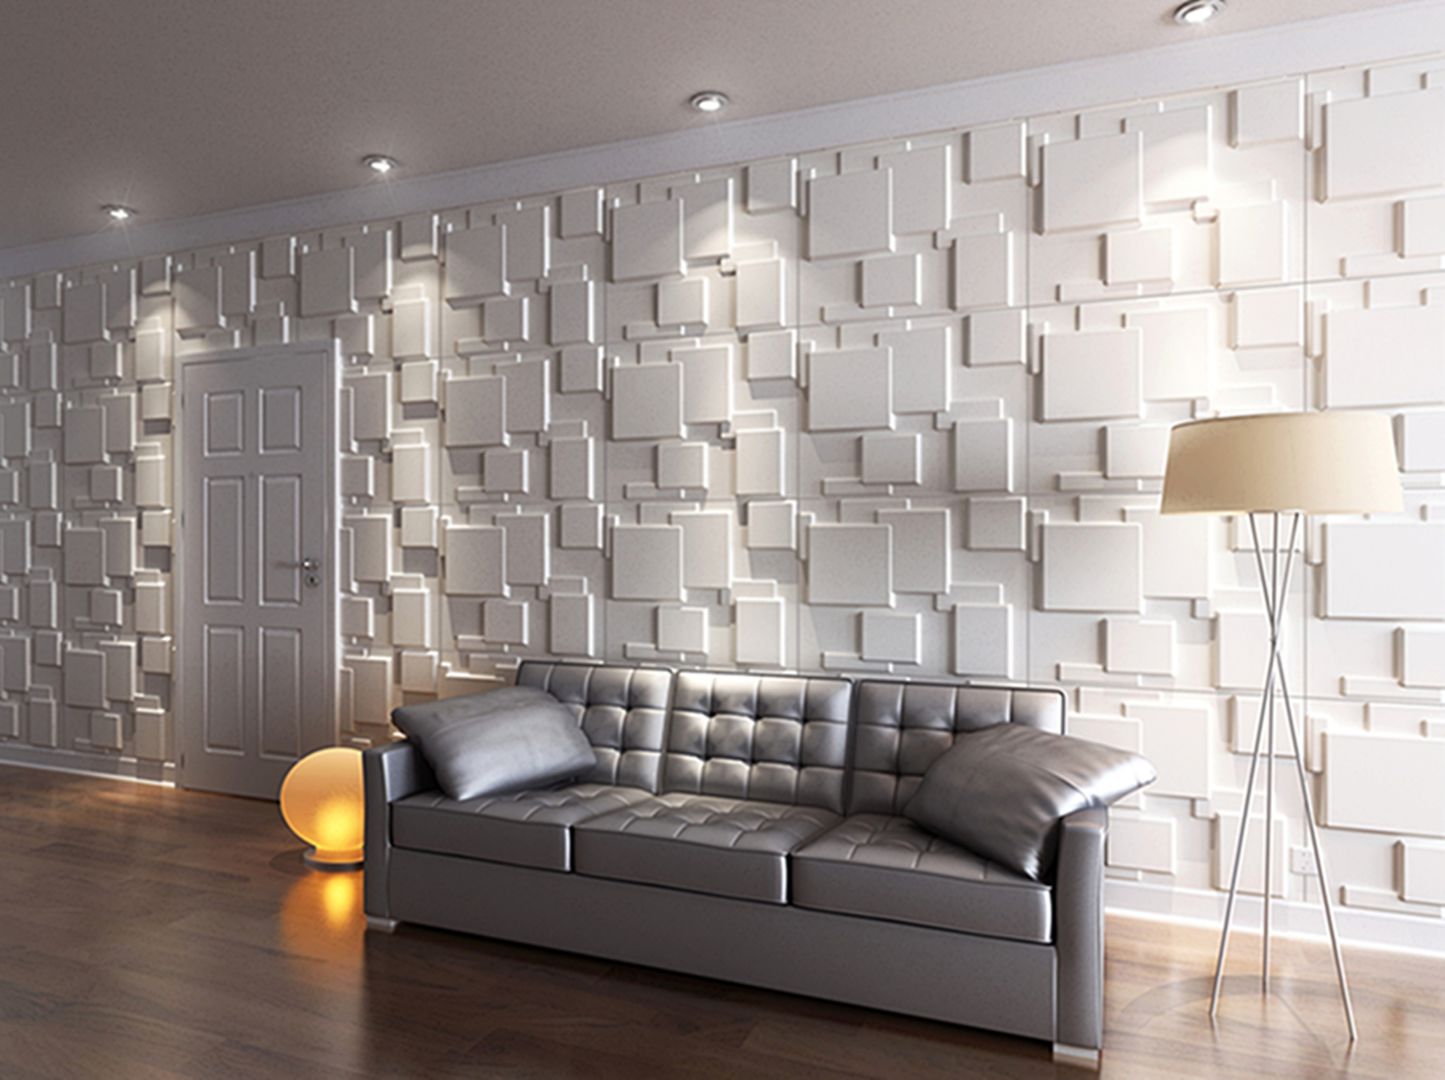 3D Wall Panels, Twinx Interiors Twinx Interiors 商業空間 ホテル